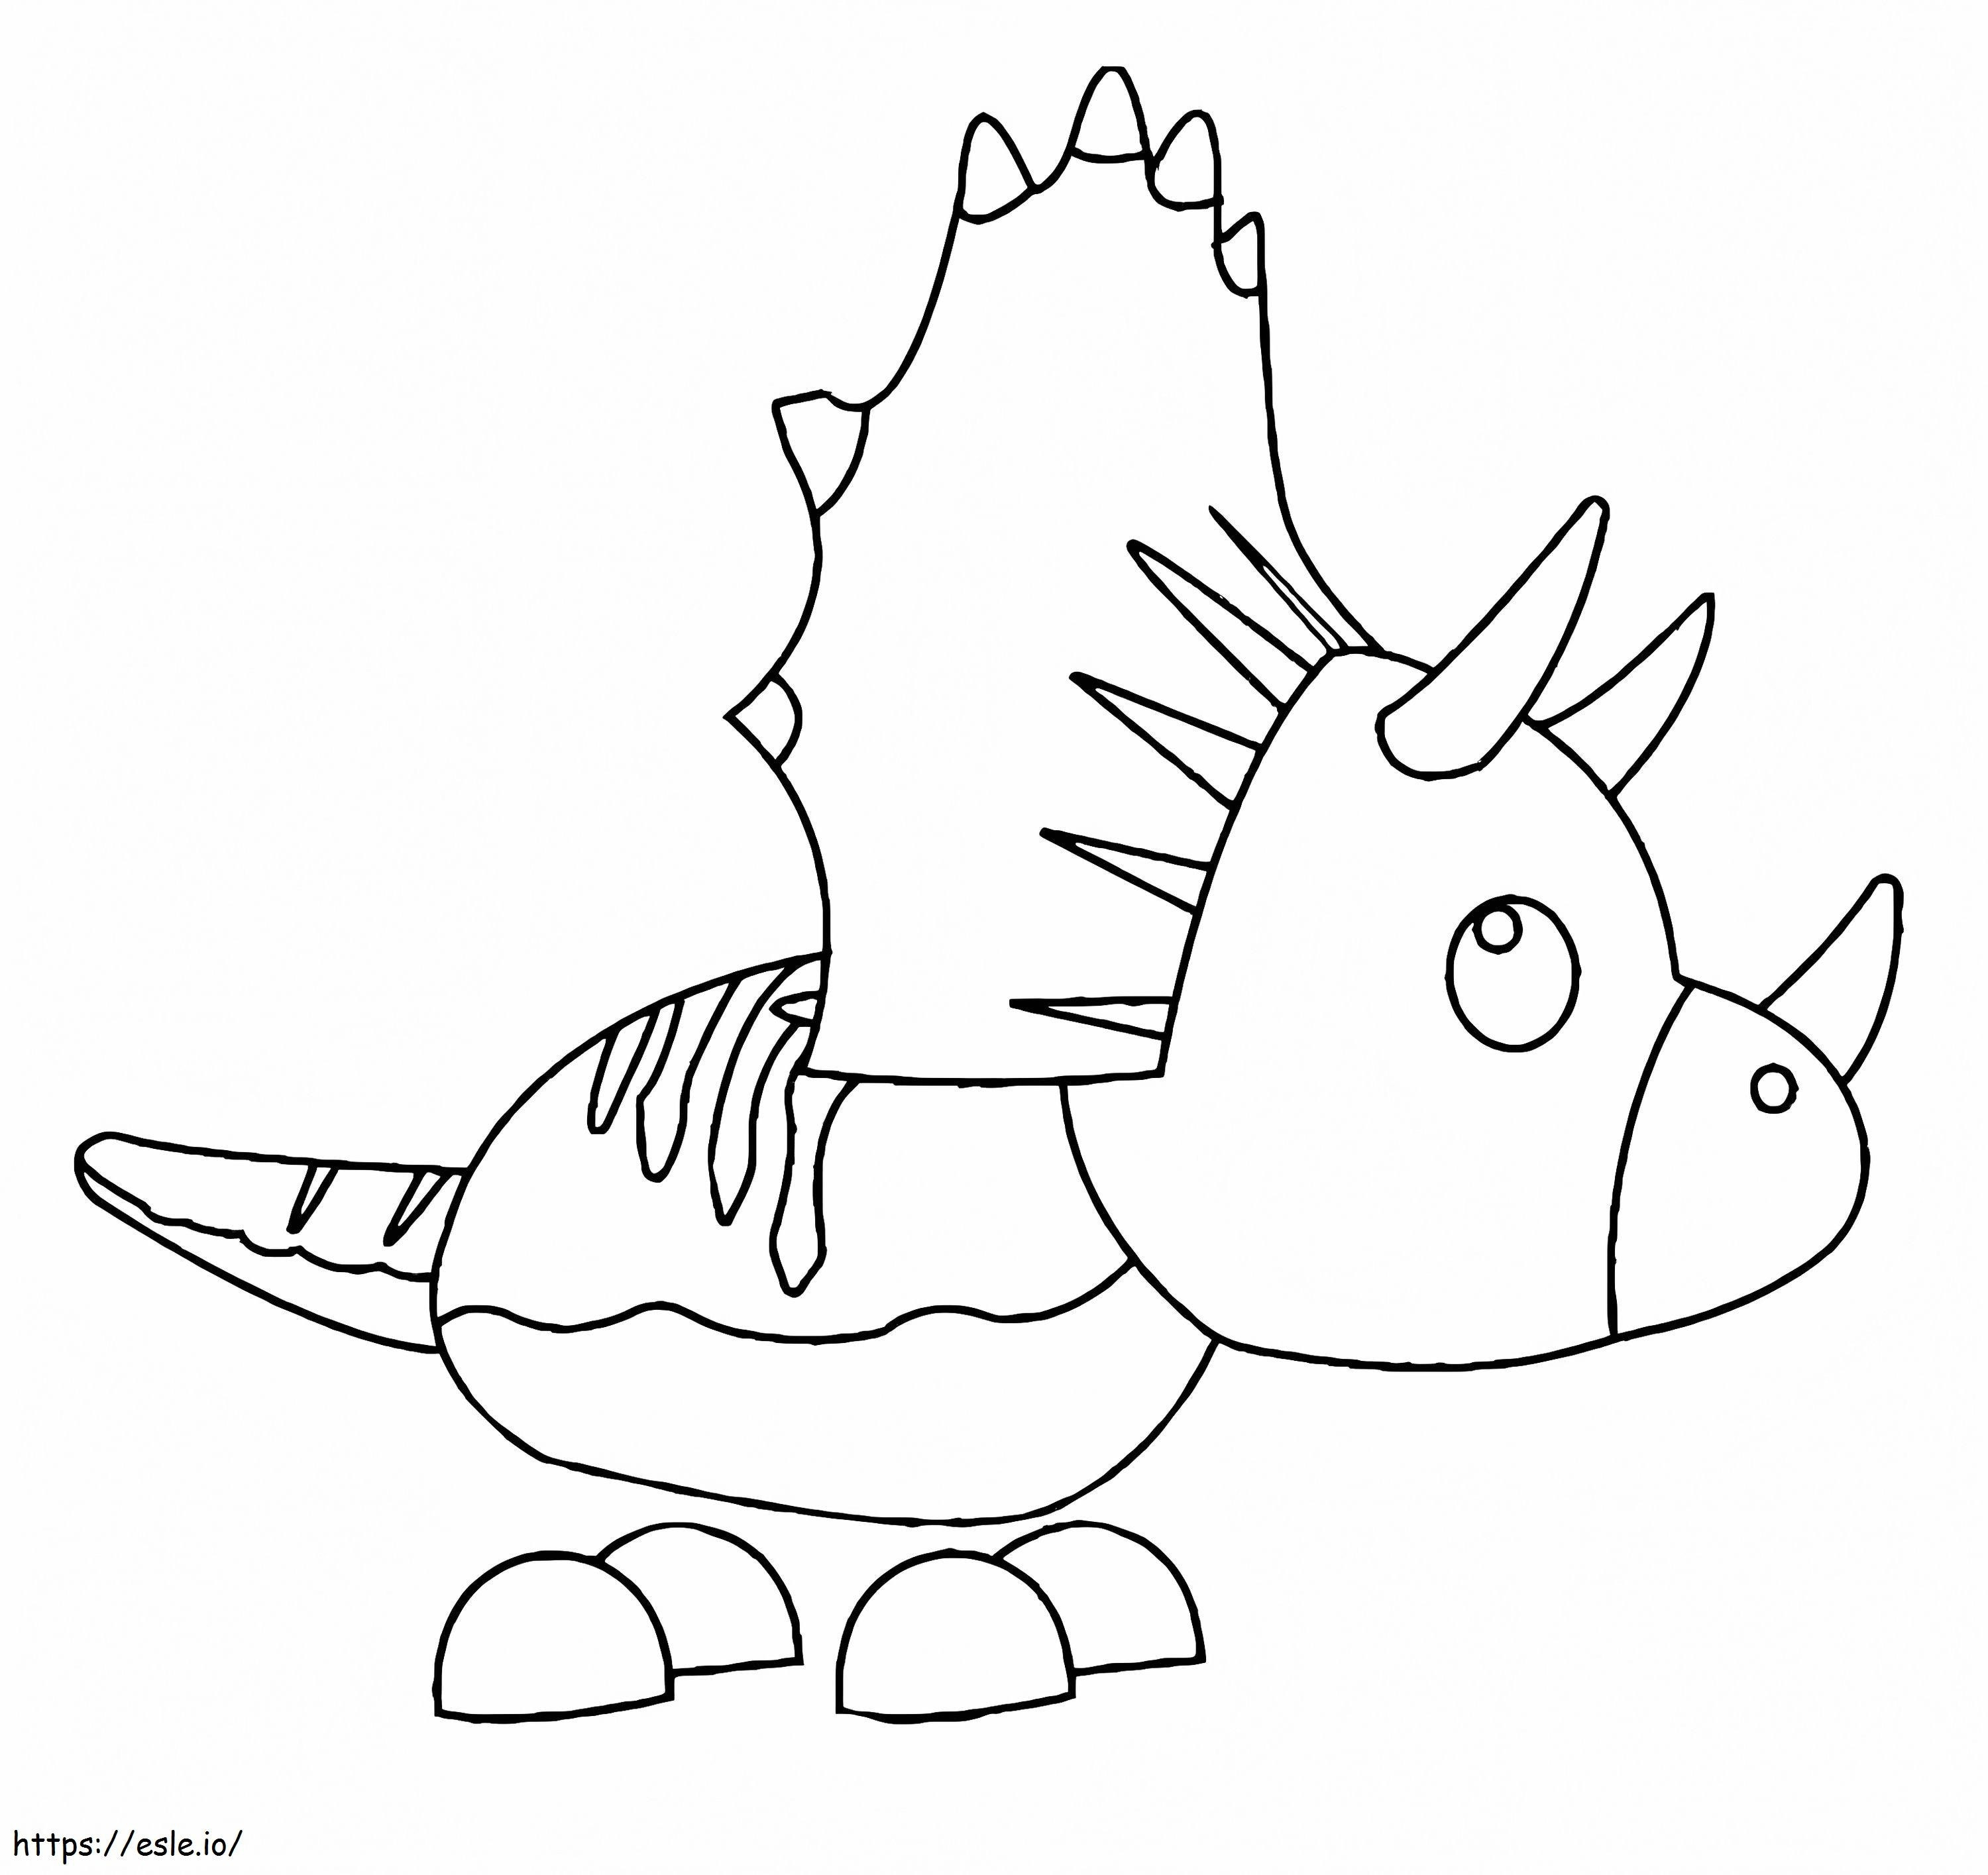 Coloriage Adoptez-moi Pet Triceratops à imprimer dessin